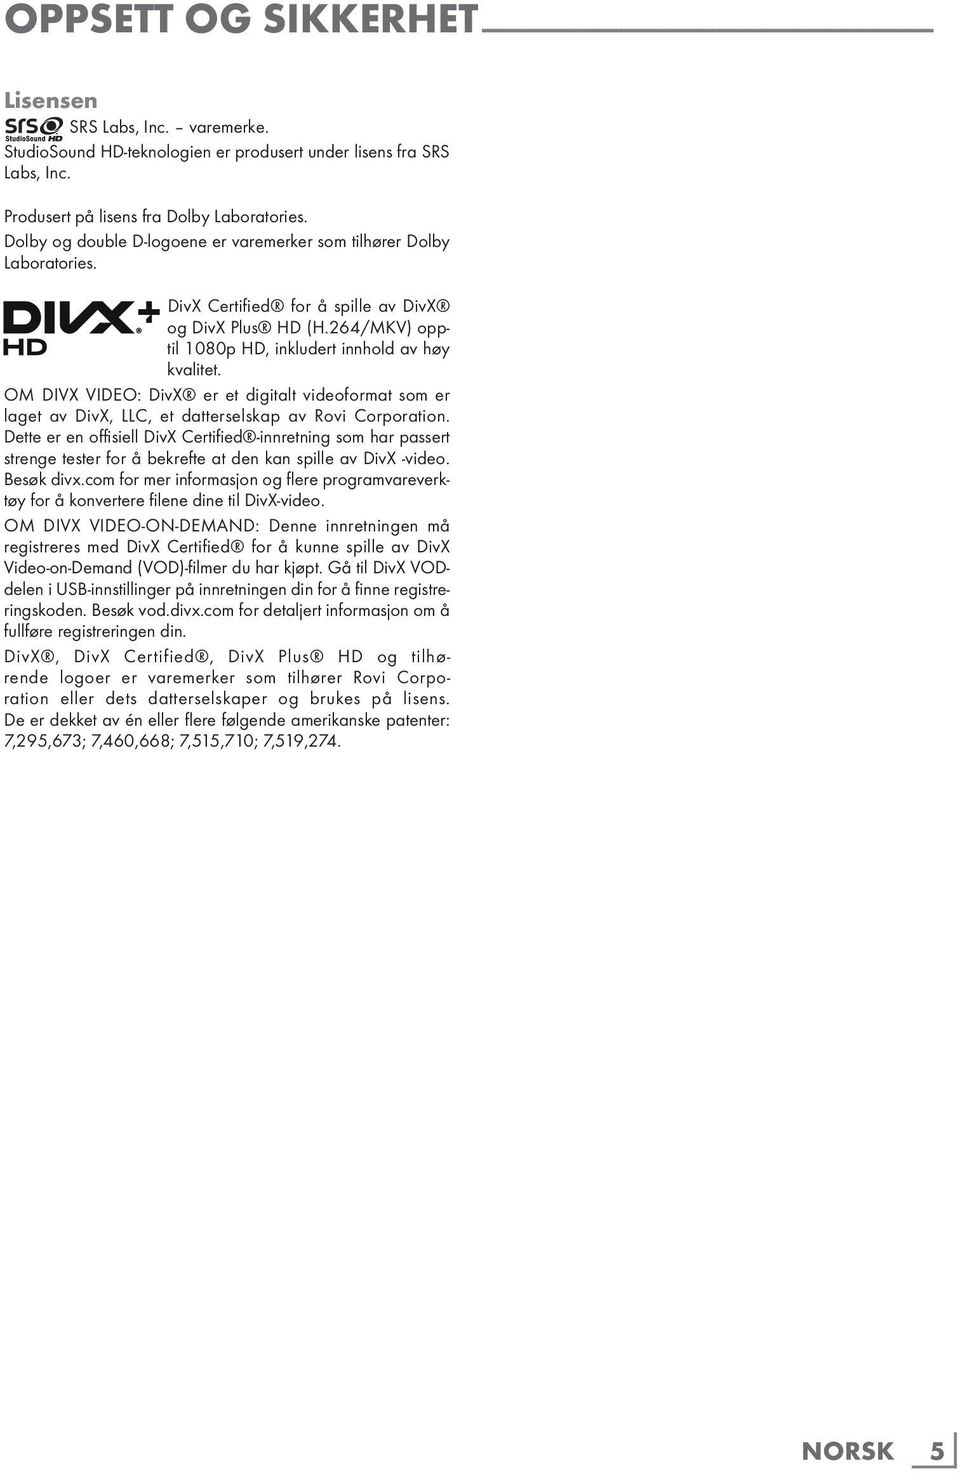 DivX Certified for å spille av DivX og DivX Plus HD (H.264/MKV) opptil 1080p HD, inkludert innhold av høy kvalitet.